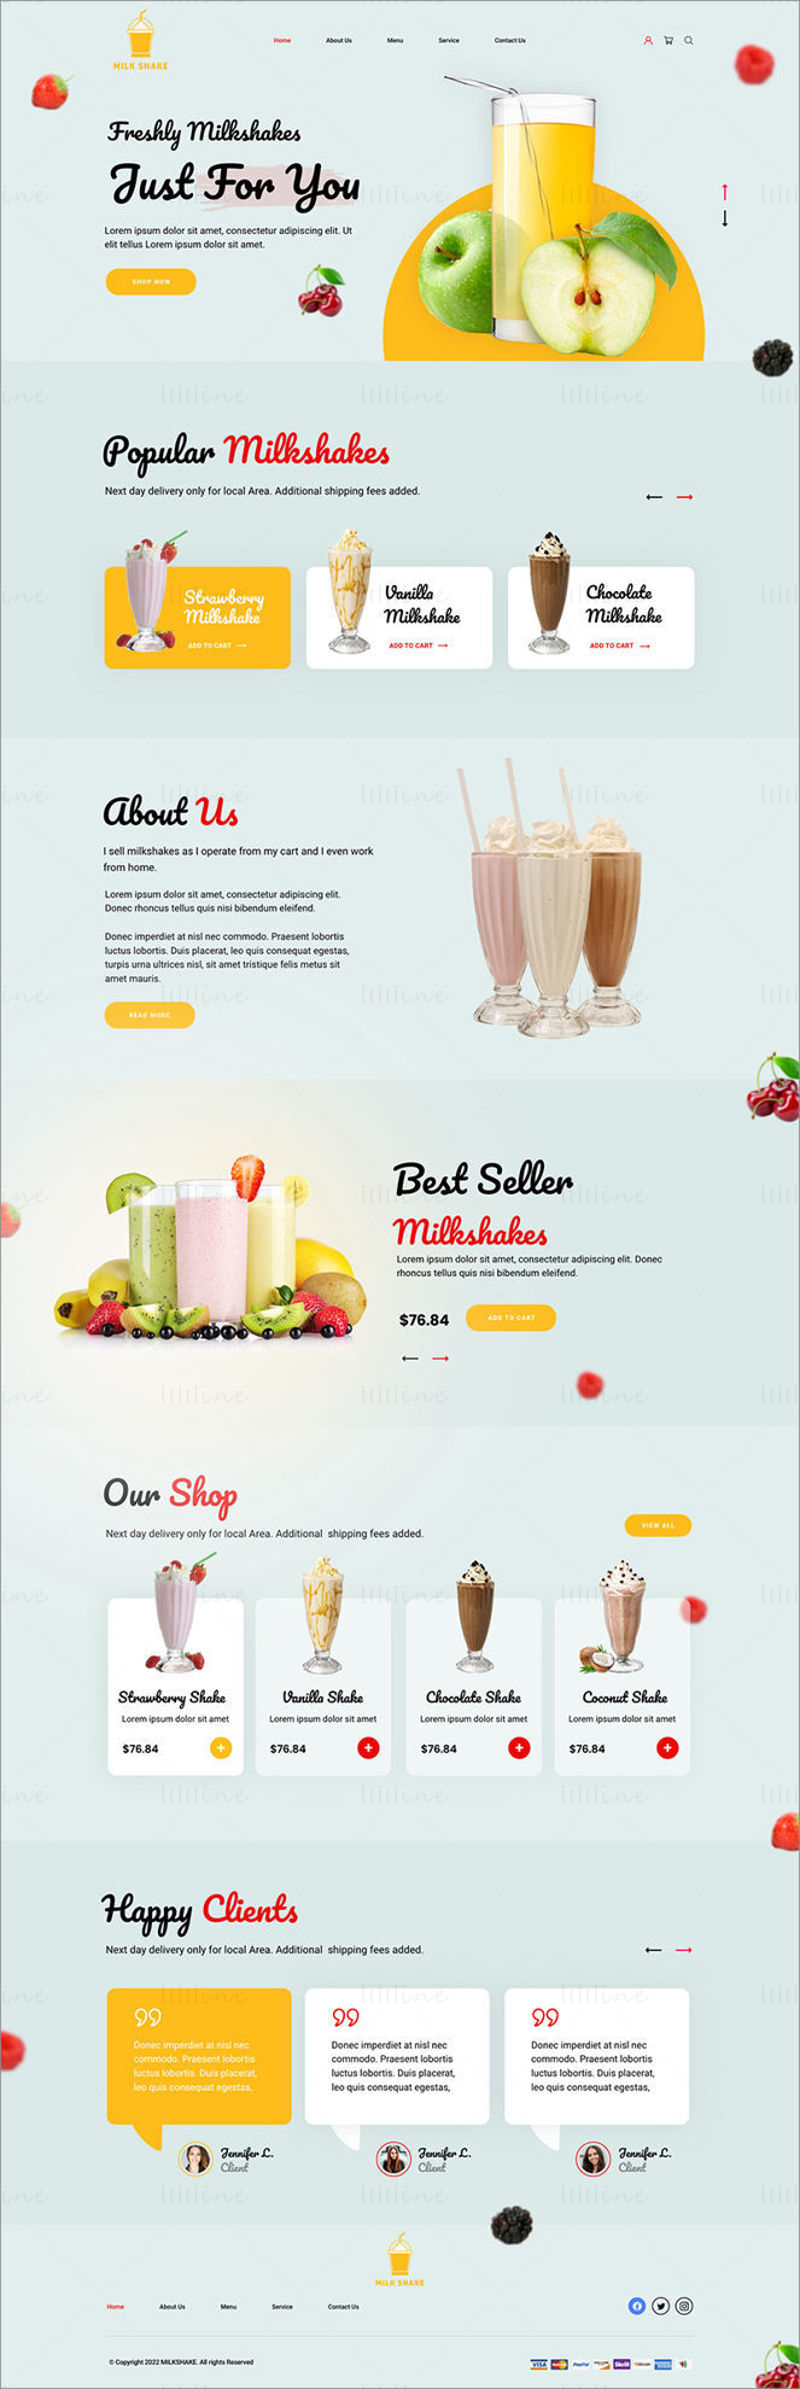 Шаблон целевой страницы веб-сайта Milk Shake — пользовательский интерфейс Adobe XD